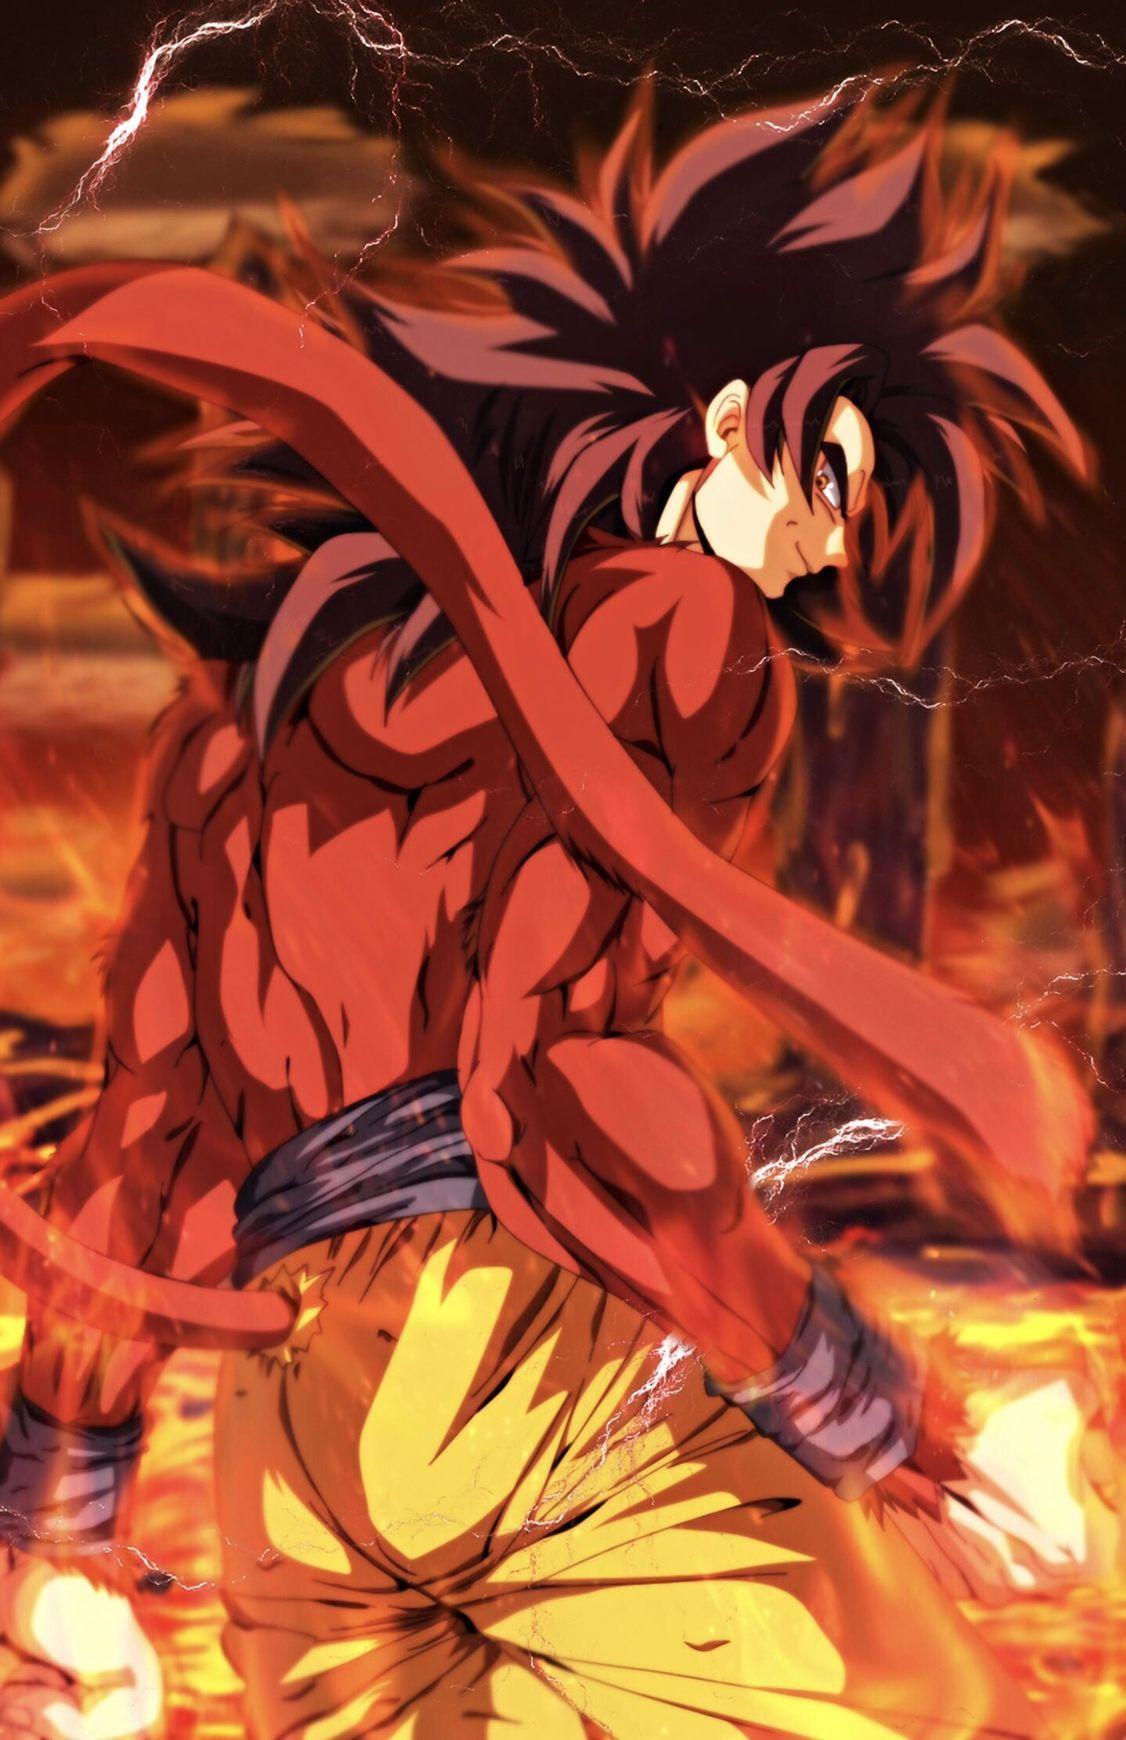 Goku SSJ4 Wallpapers - Top Free Goku SSJ4 Backgrounds ...